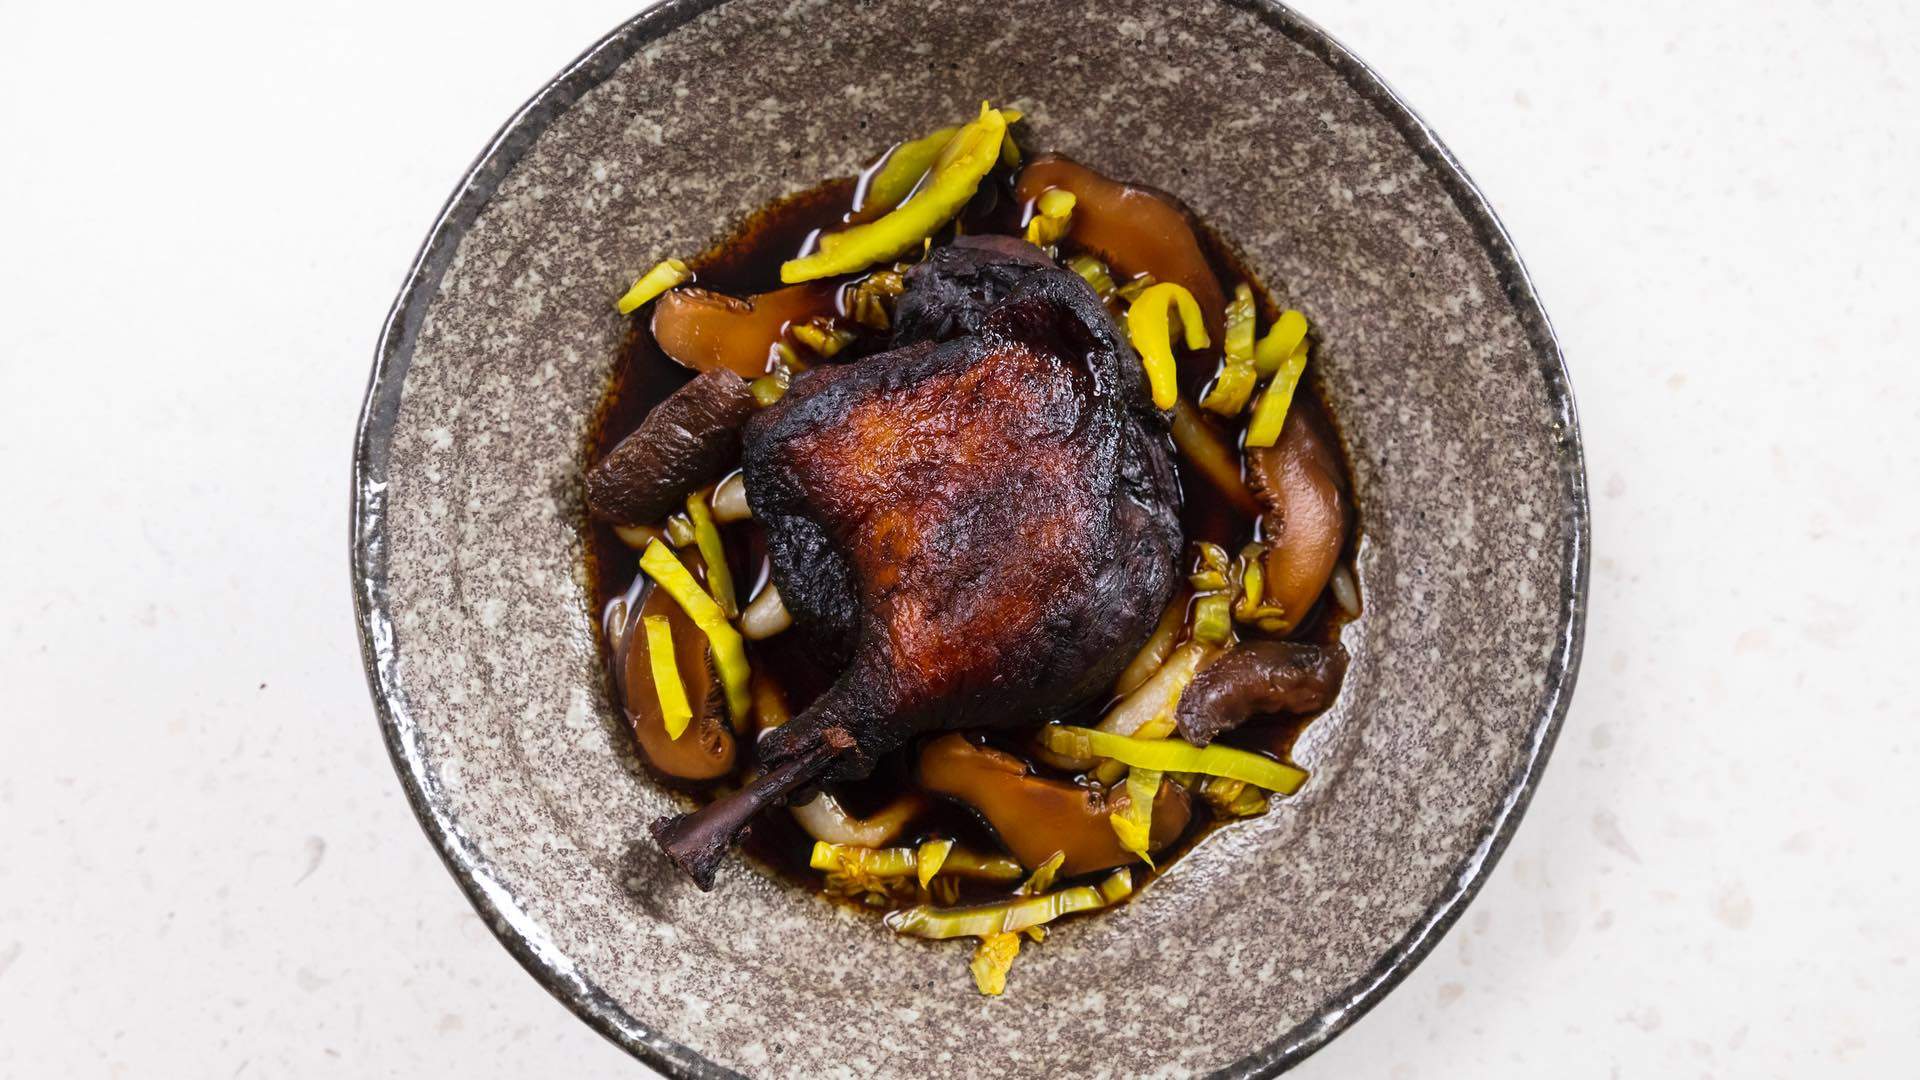 Alter Dining is the New Modern Australian Restaurant Replacing Windsor's BKK